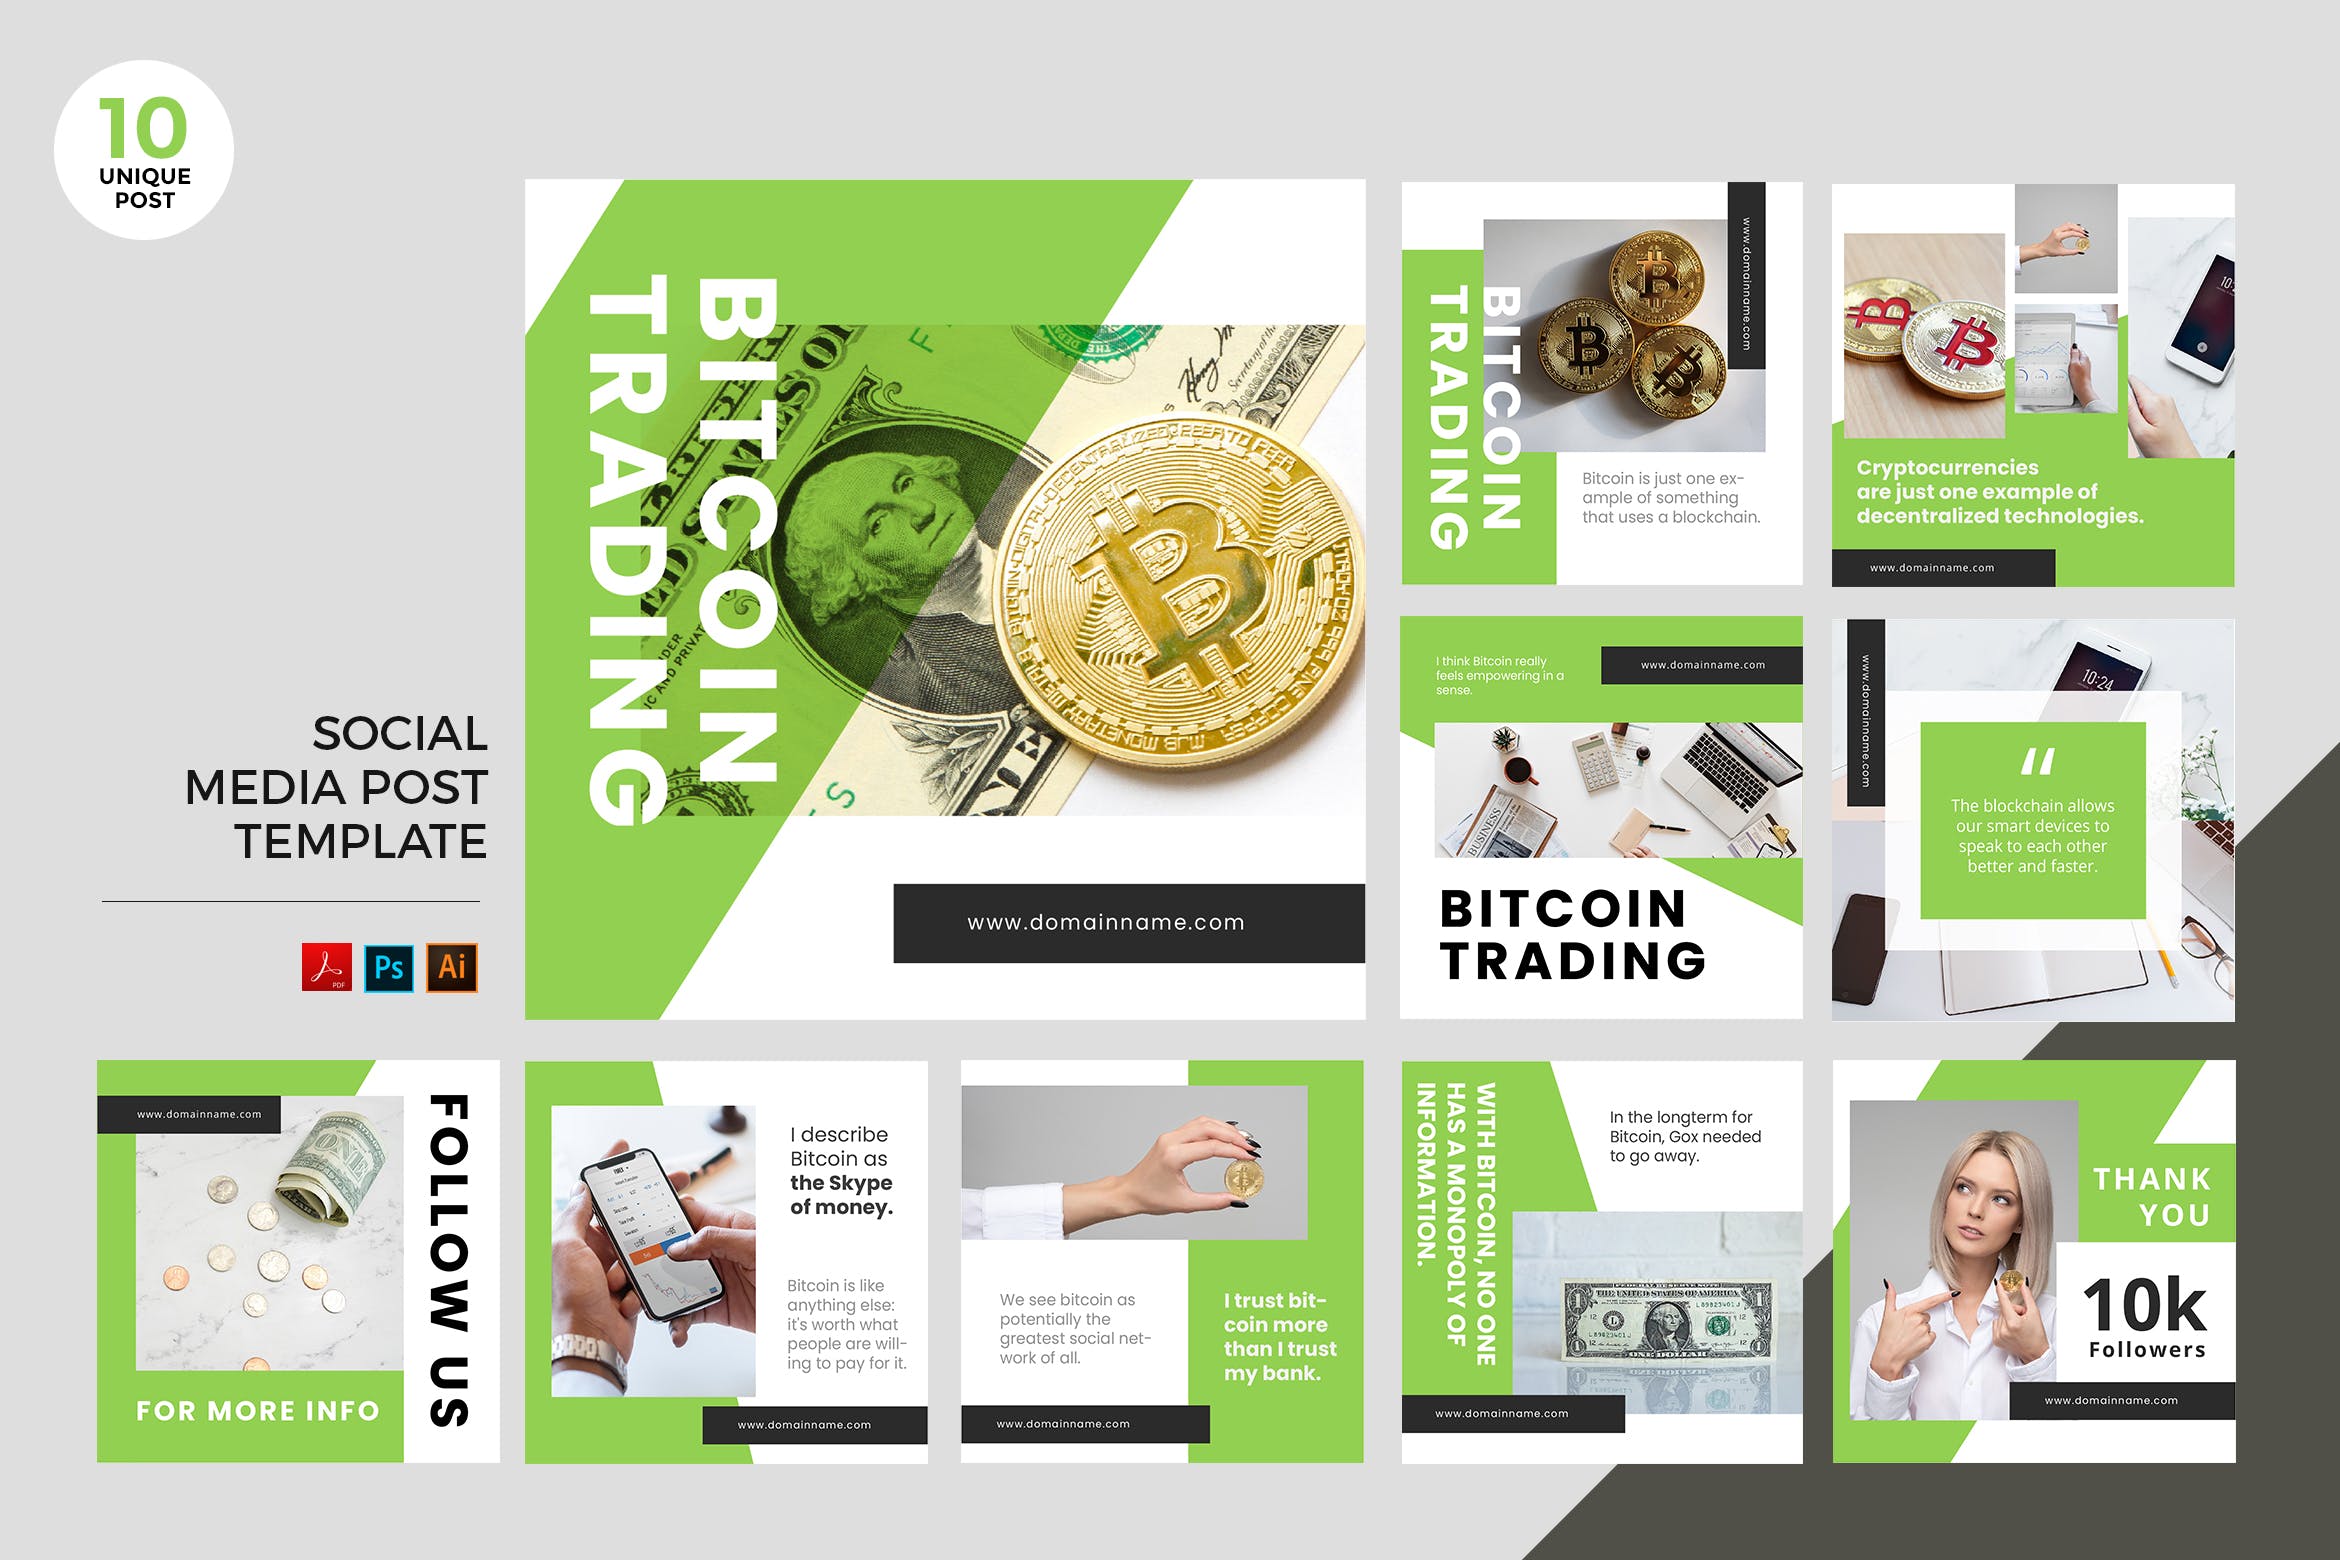 比特币交易主题社交媒体广告设计PSD&AI模板第一素材精选 Bitcoin Trading Social Media Kit PSD & AI插图